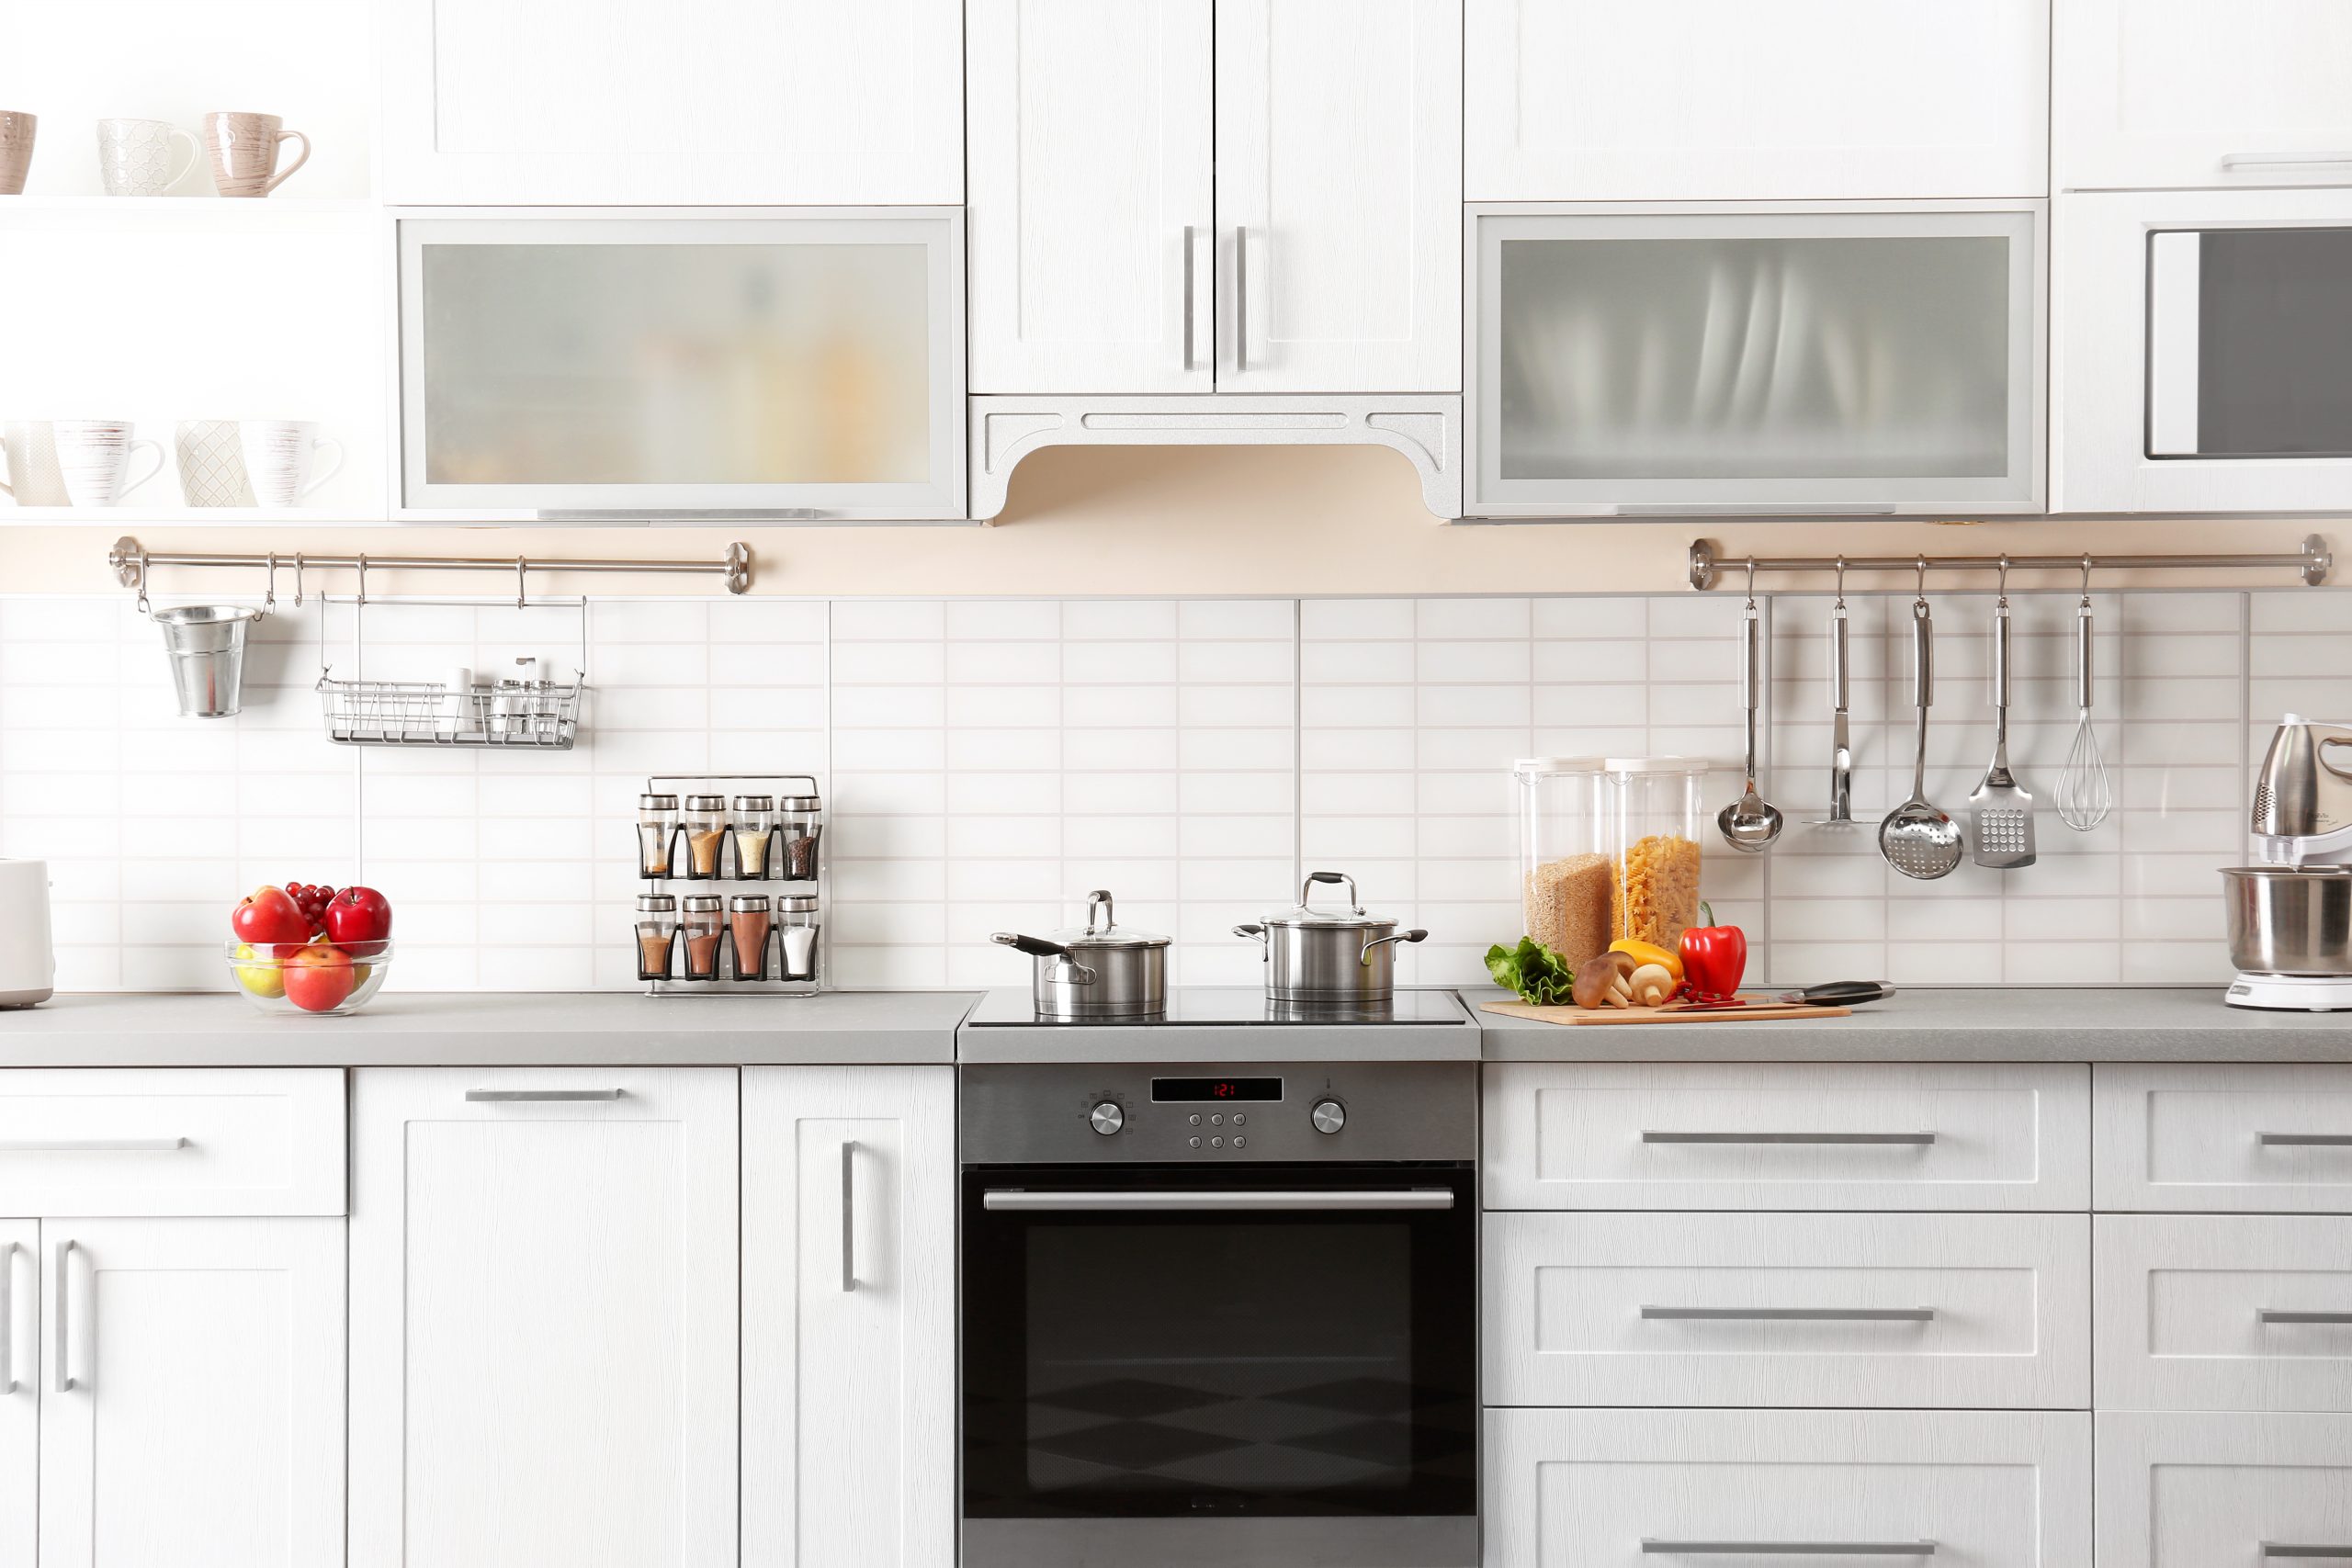 Crie uma cozinha funcional com espaço de arrumação - IKEA